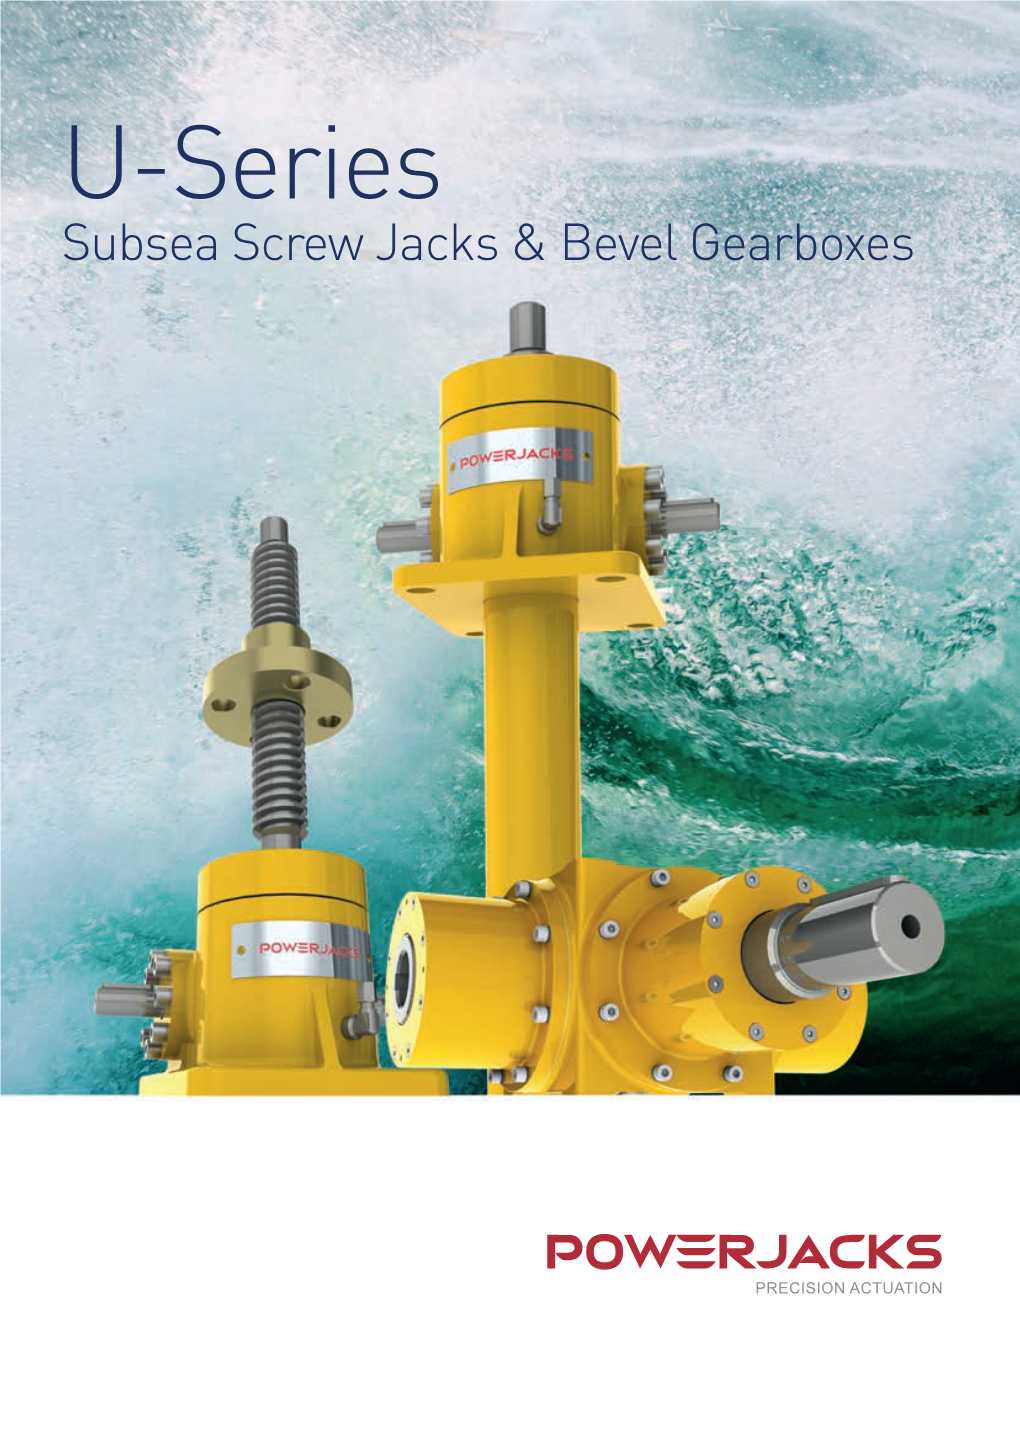 U-Series Subsea Screw Jacks & Bevel Gearboxes